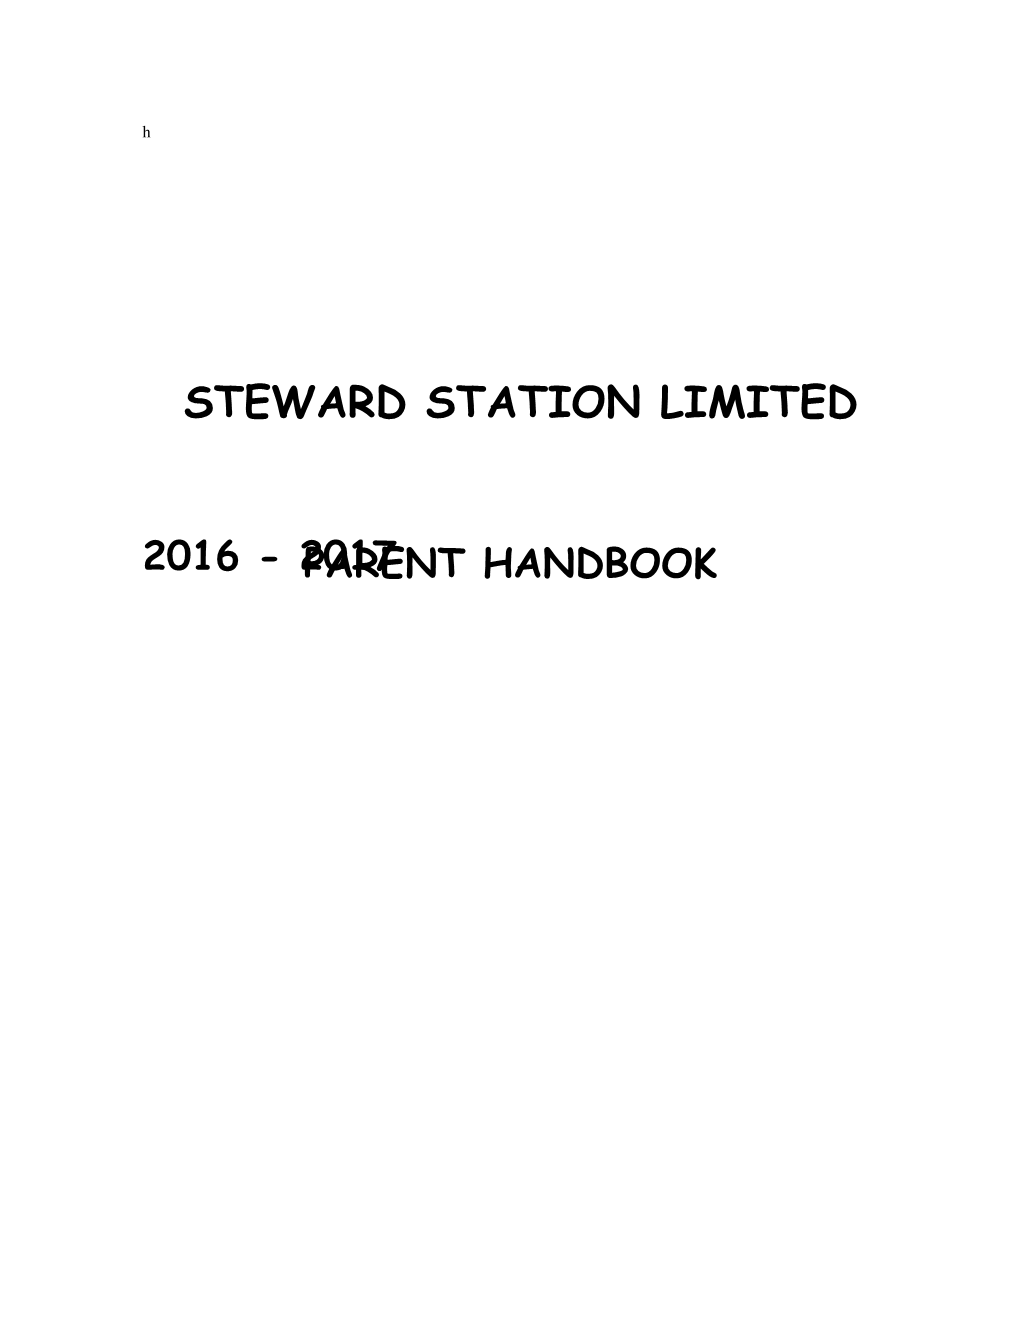 Steward Station Limited